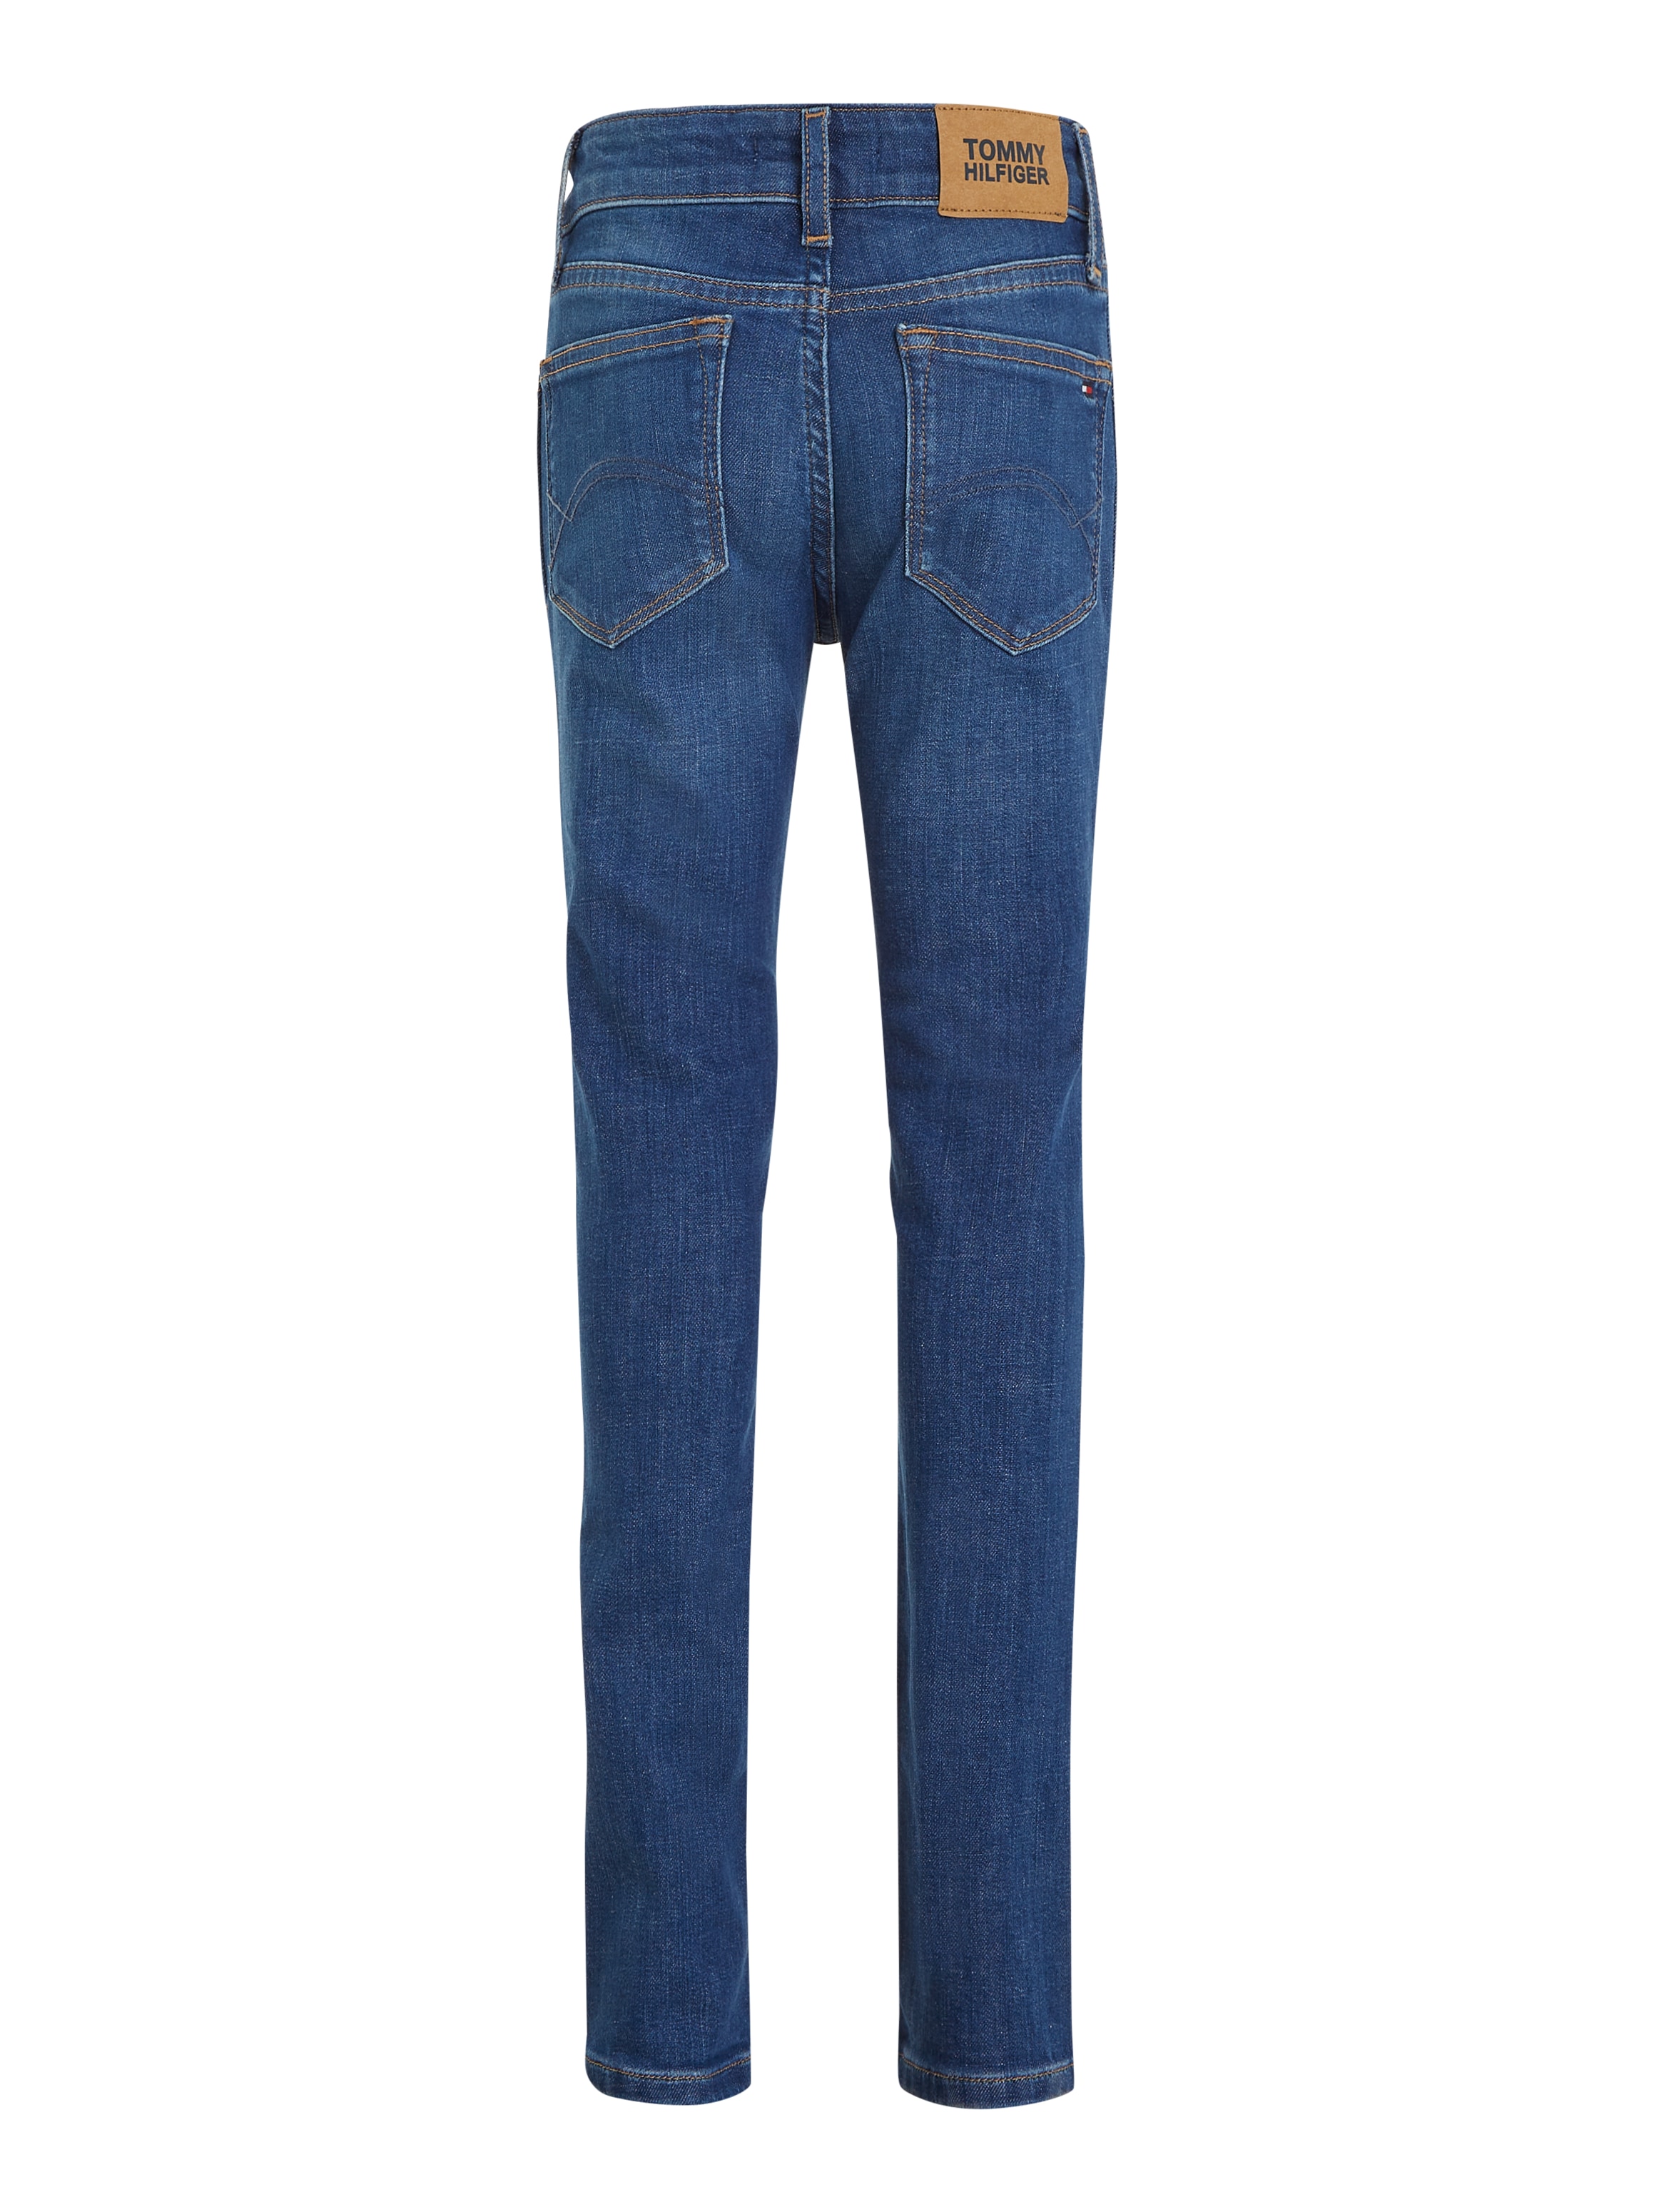 Tommy Hilfiger Slim-fit-Jeans »NORA DARK WASH«, in blauer Waschung